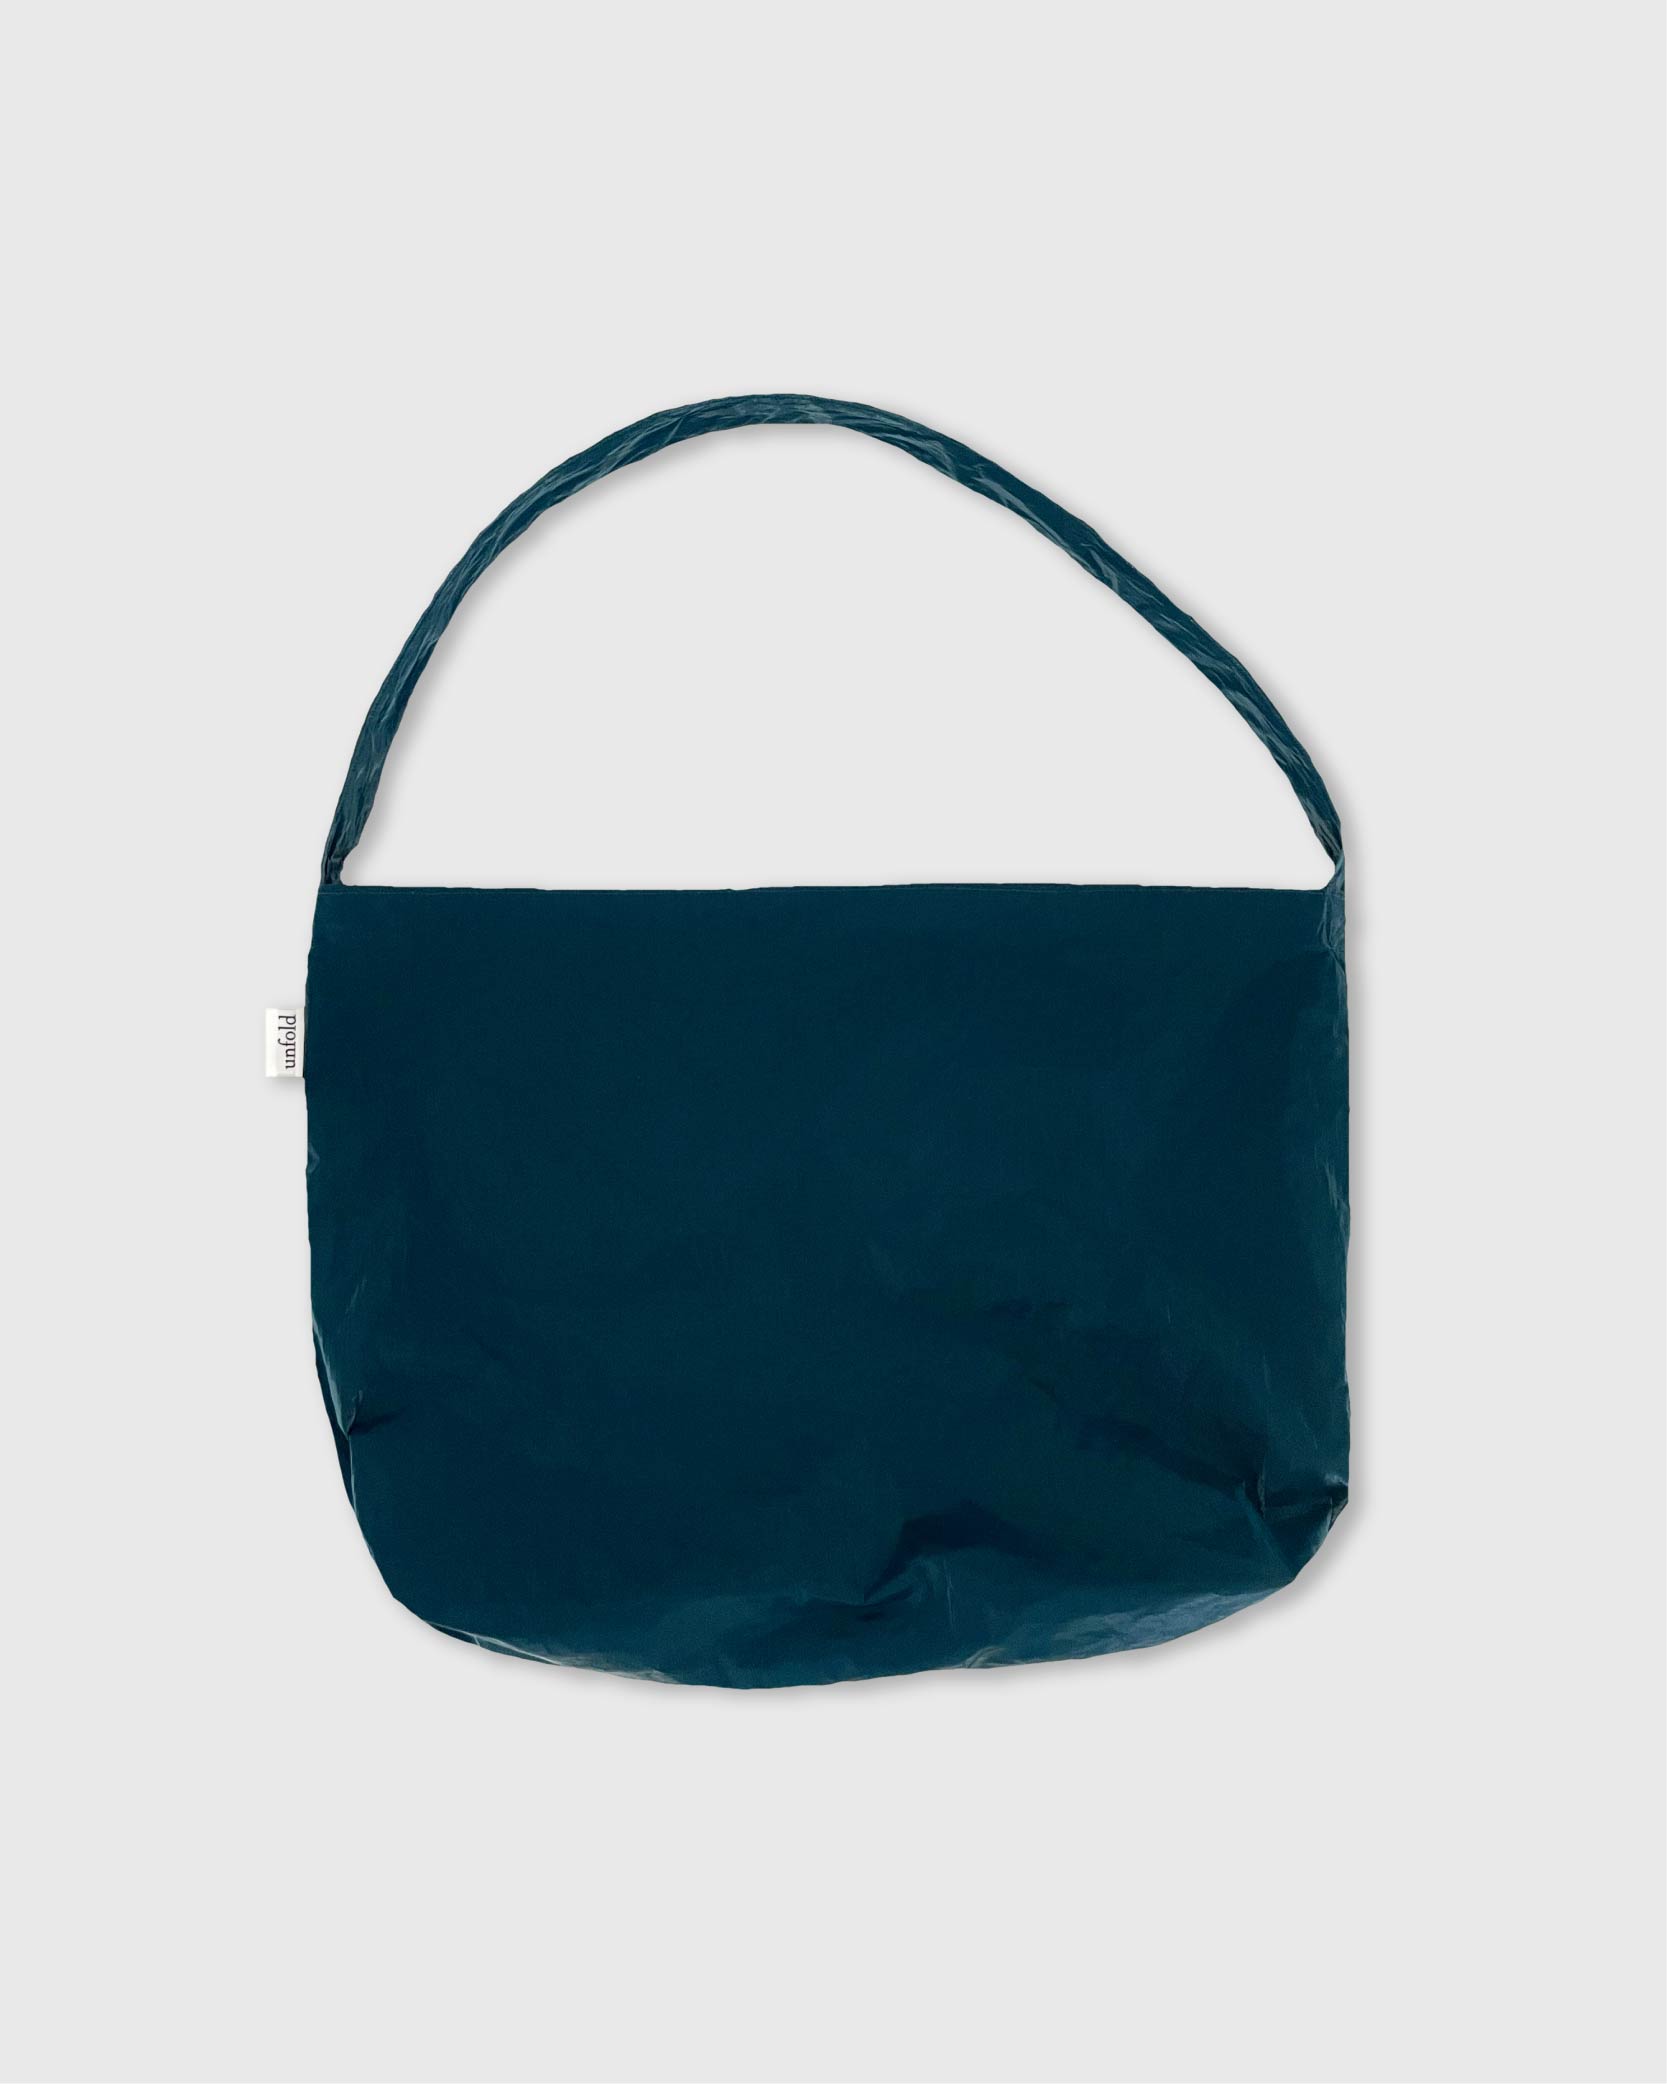 언폴드,unfold,에코백,파우치,천가방,친환경가방,Glossy shoulder bag (turquoise)